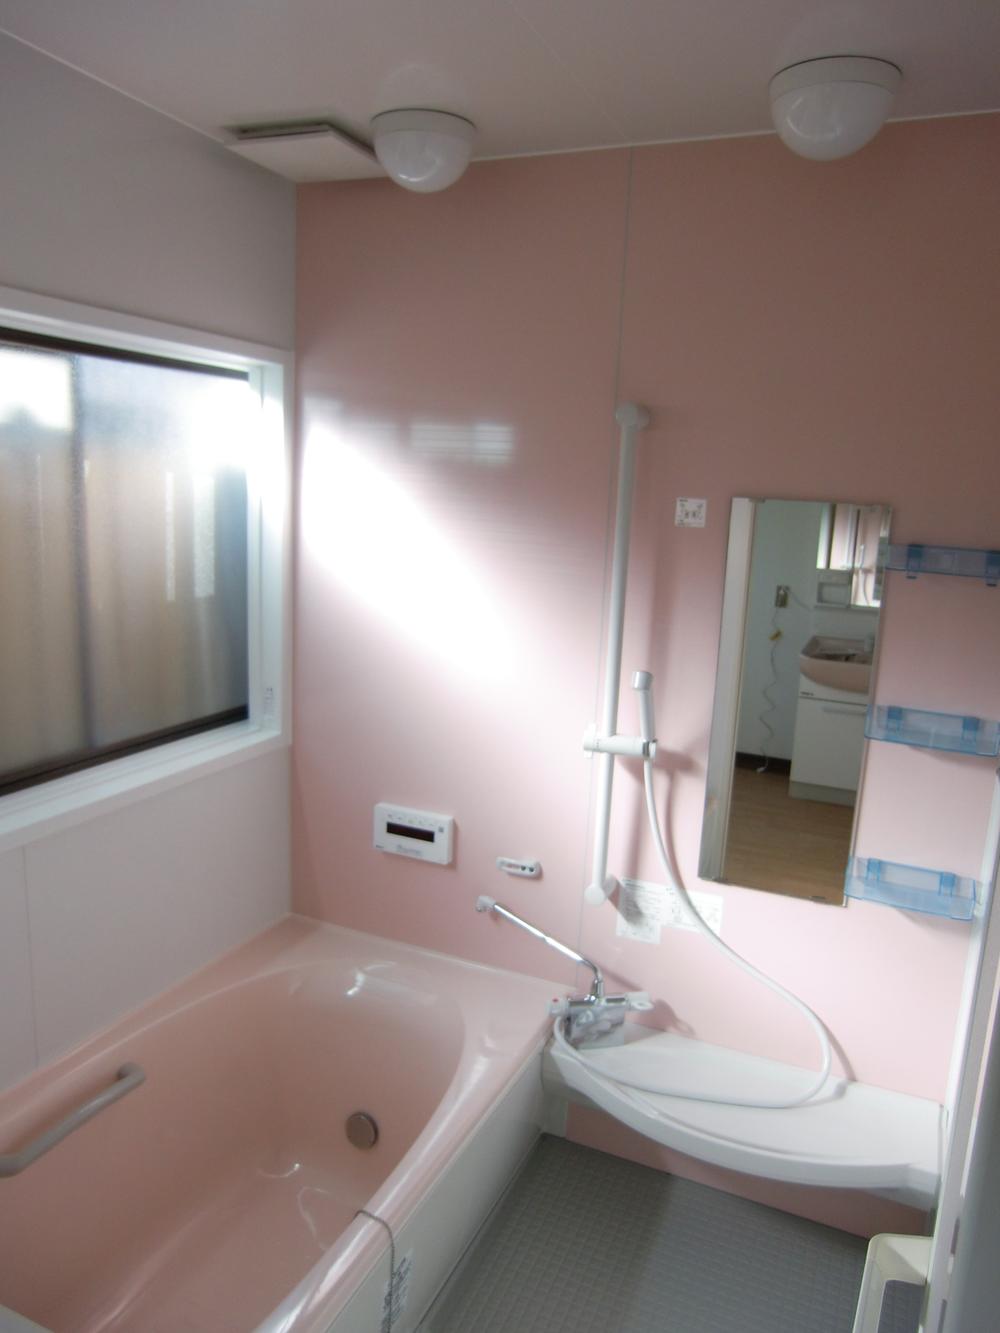 Bathroom. Indoor (February 2009) Shooting